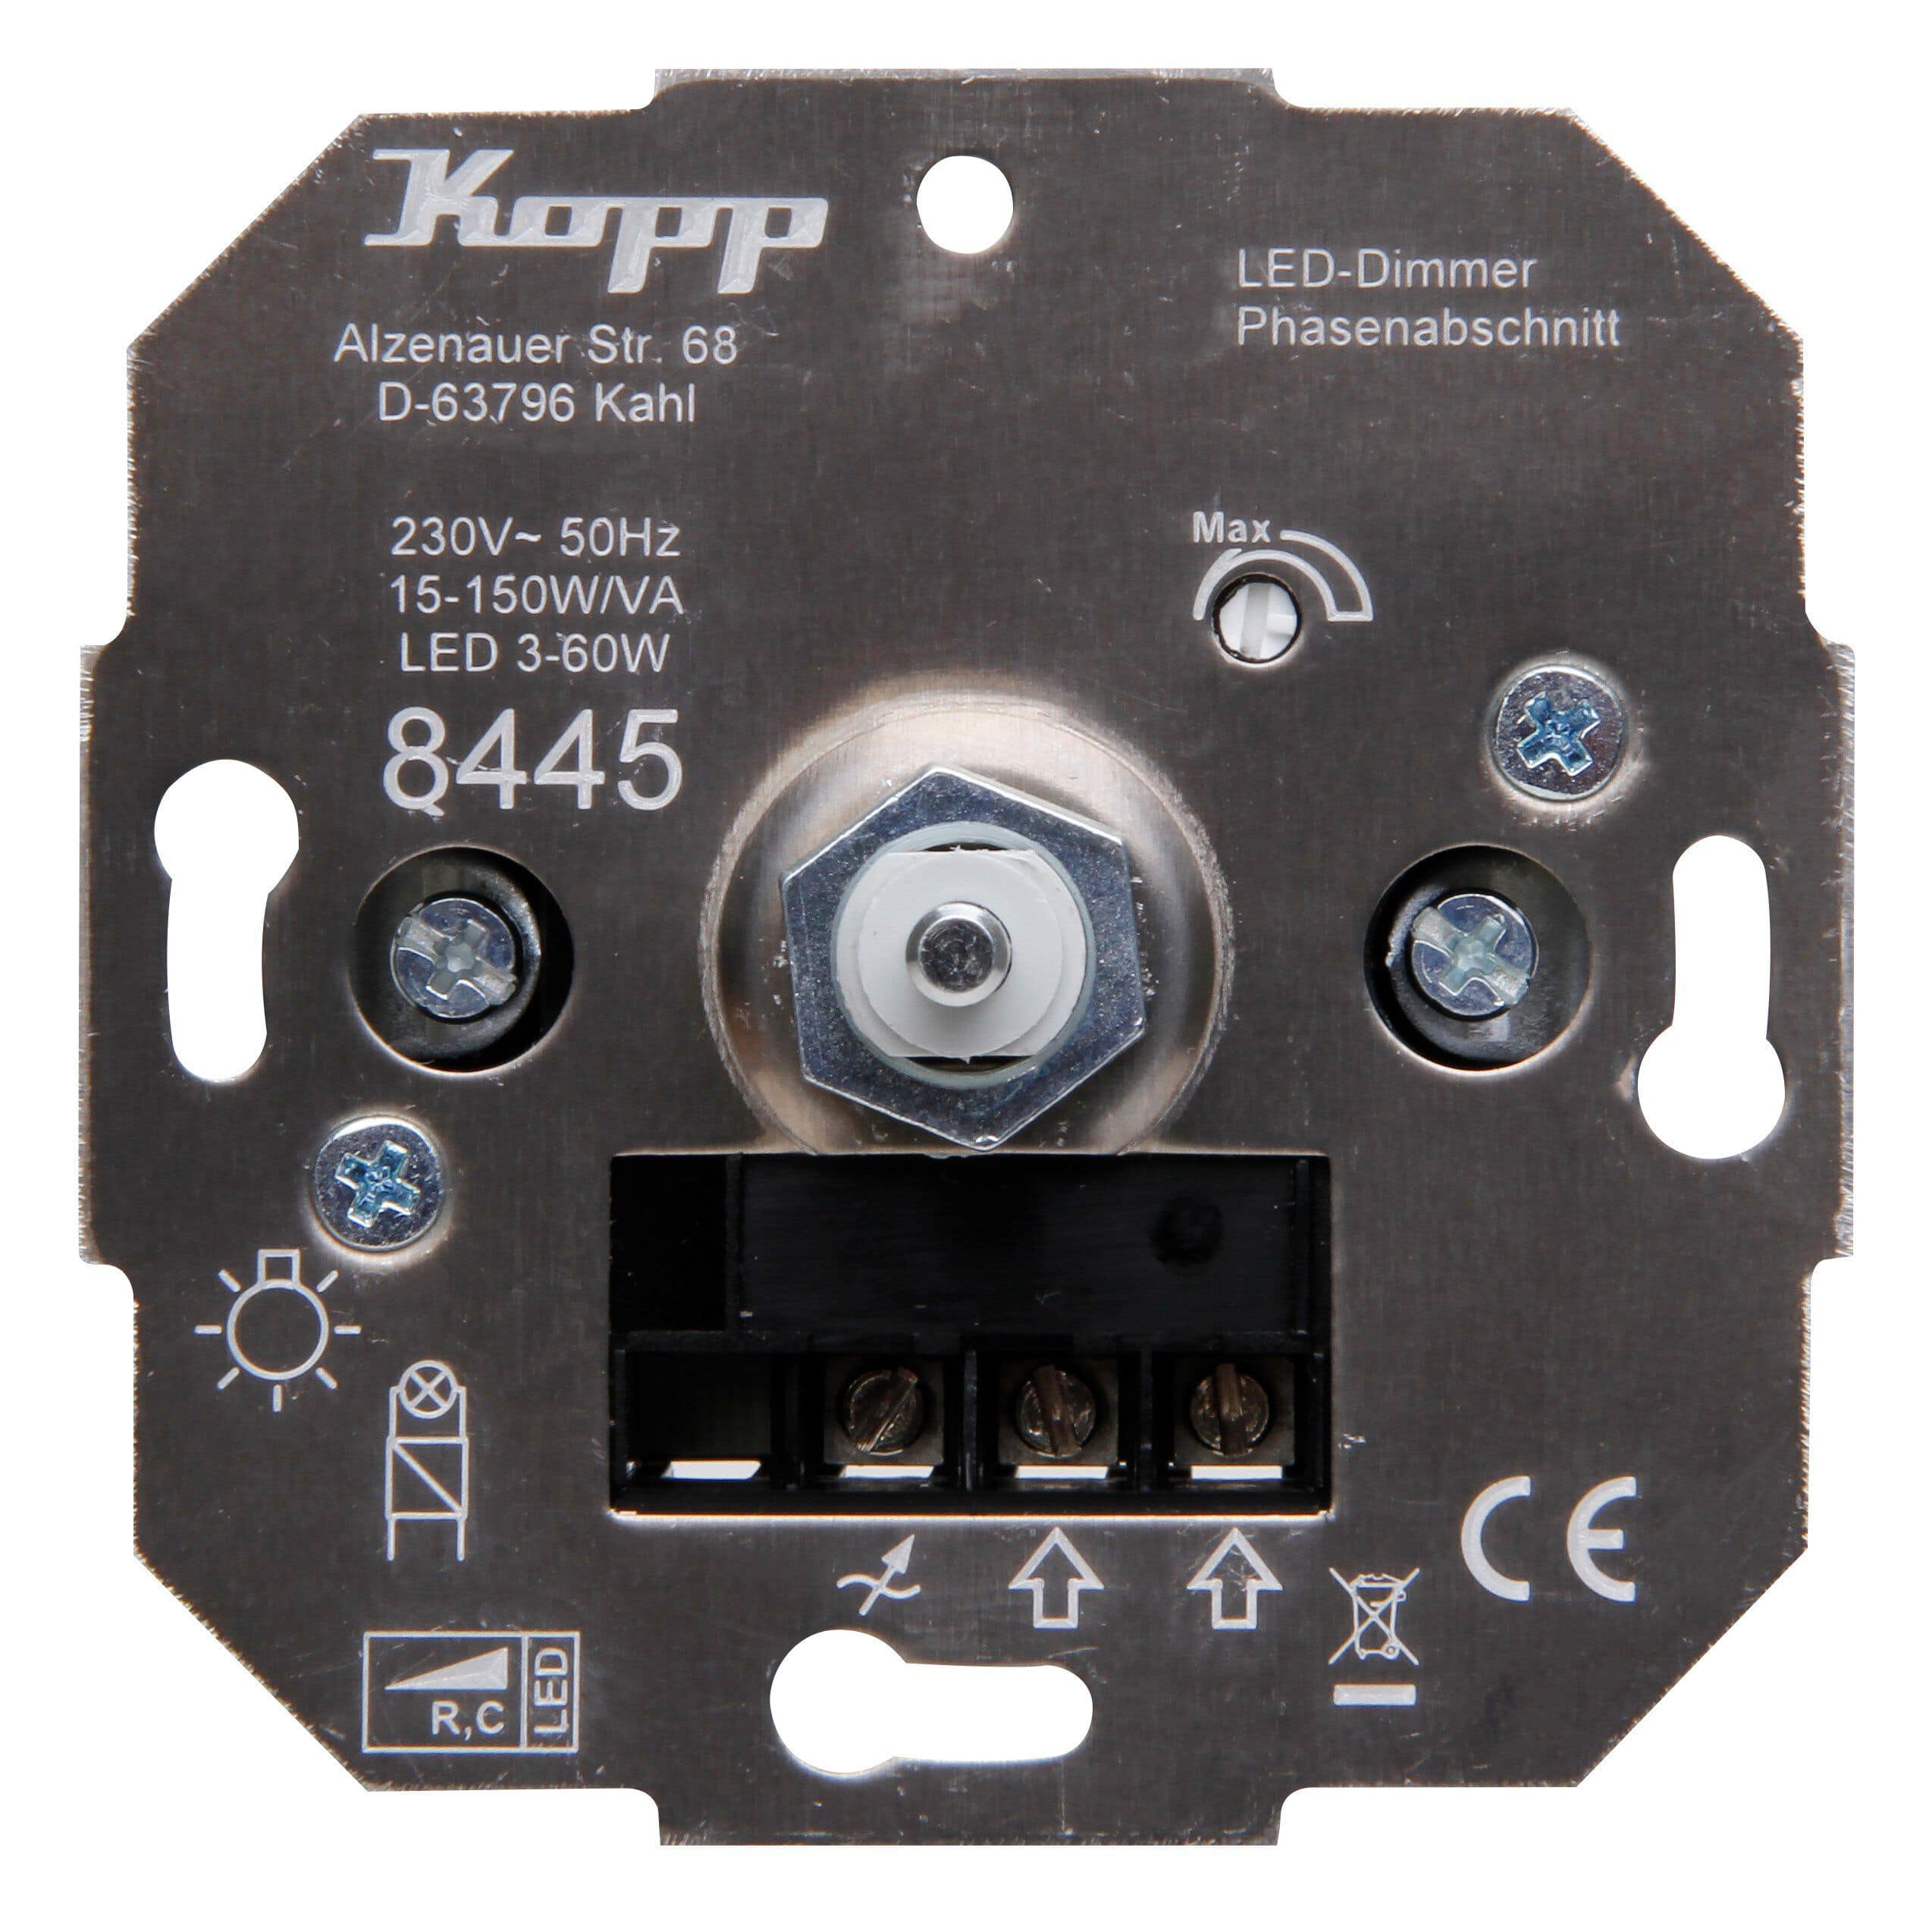 Kopp 844500001 Dimmer Sockel Druck-Wechselschalter LED-Dimmer, 50W/RC